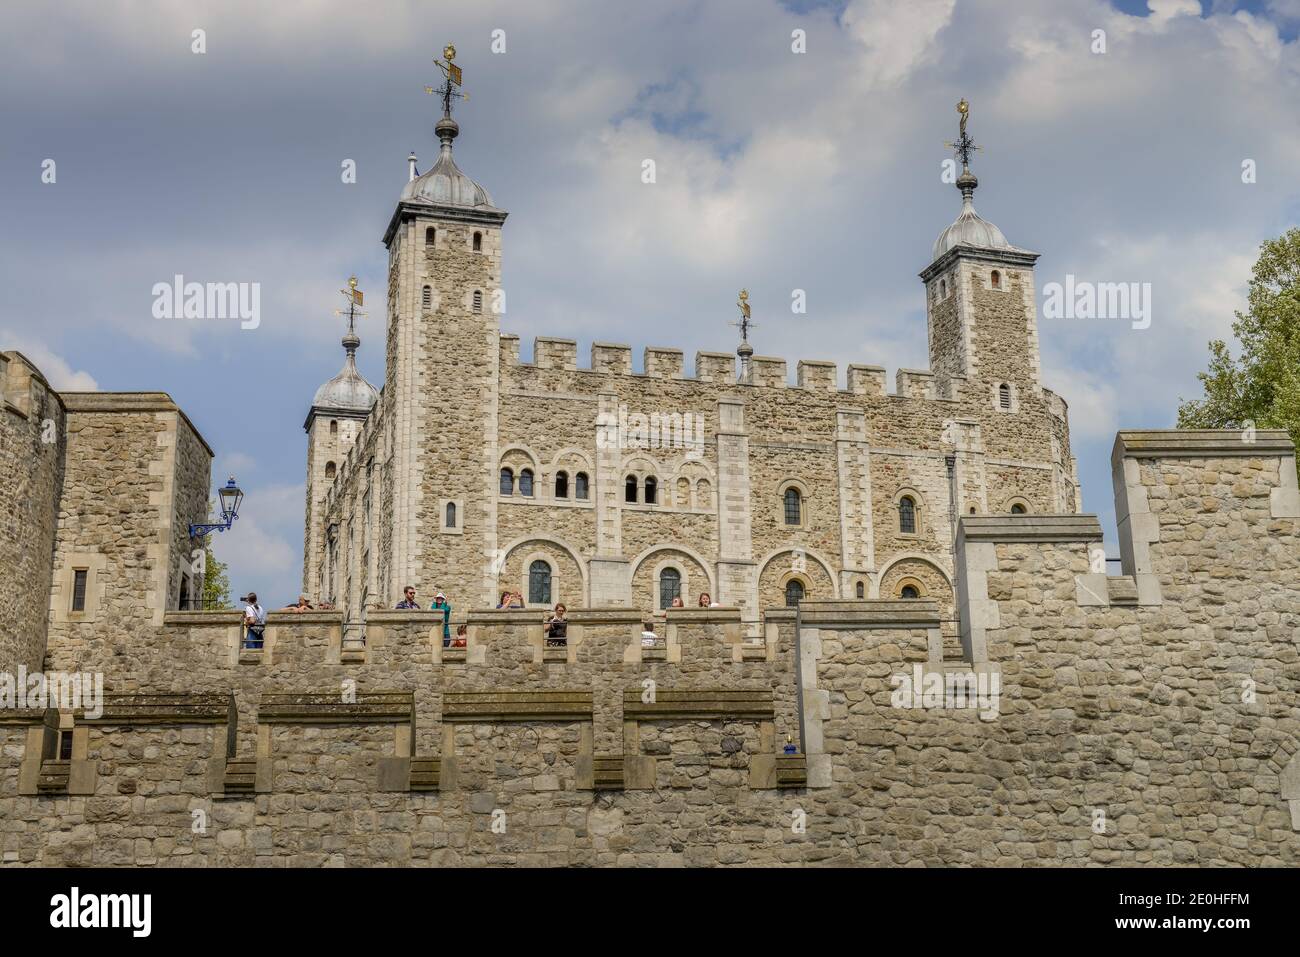 La Tour Blanche, la Tour de Londres, Londres, Angleterre, Grossbritannien Banque D'Images